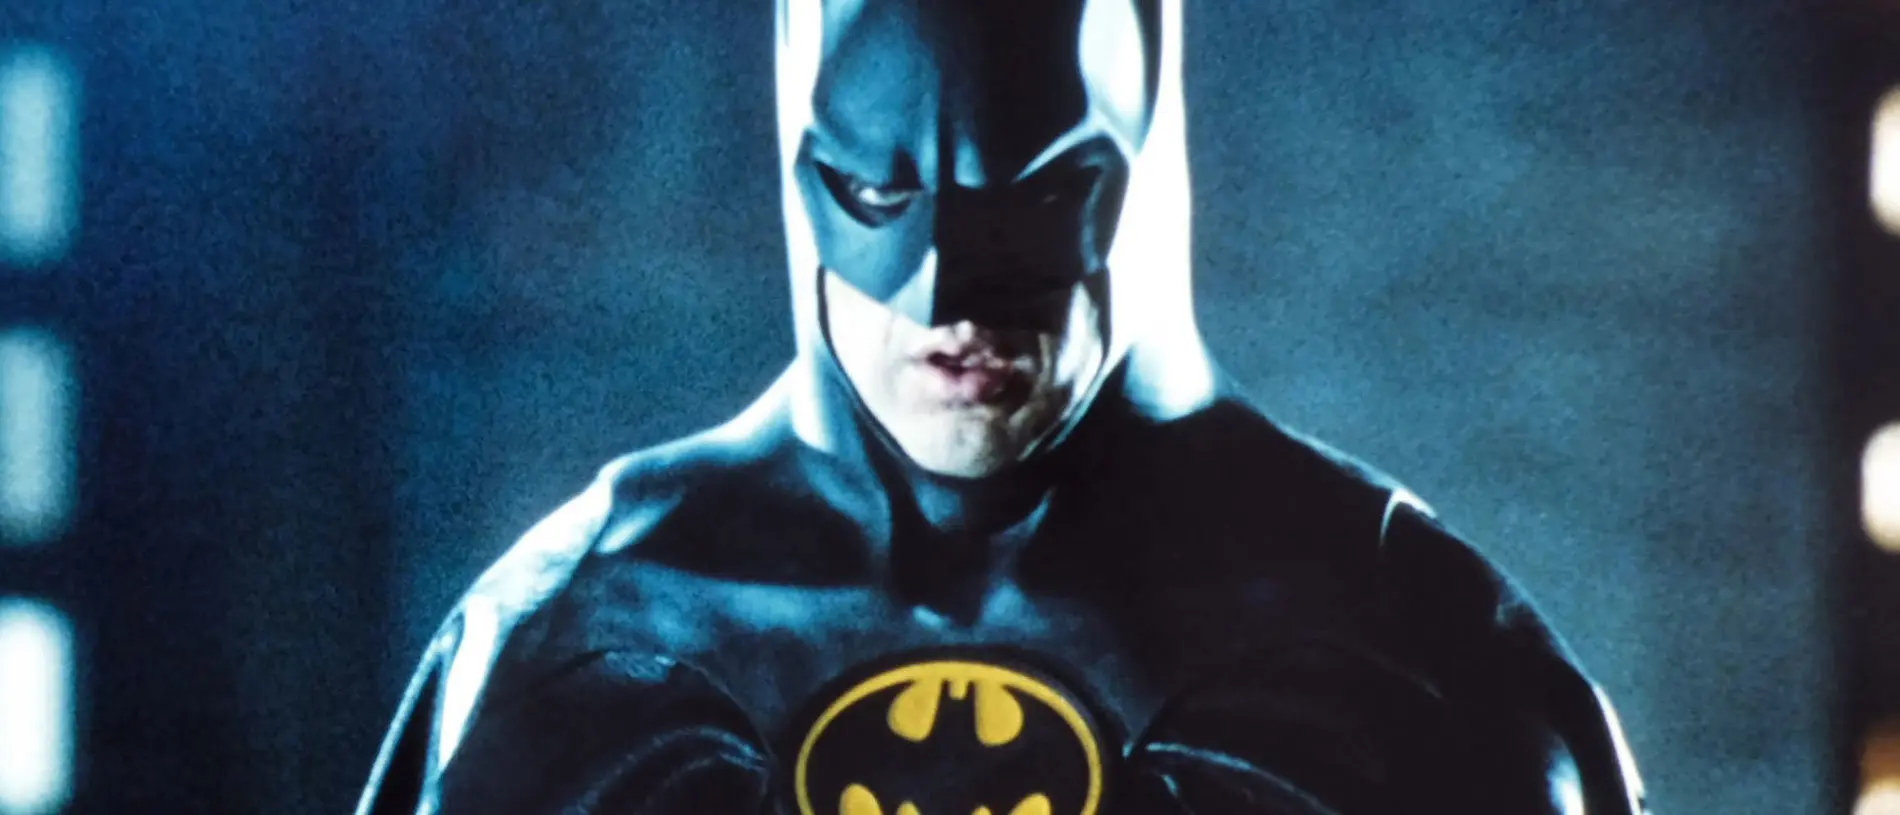 Batman-Michael-Keaton-Batsuit Batman Beyond Film